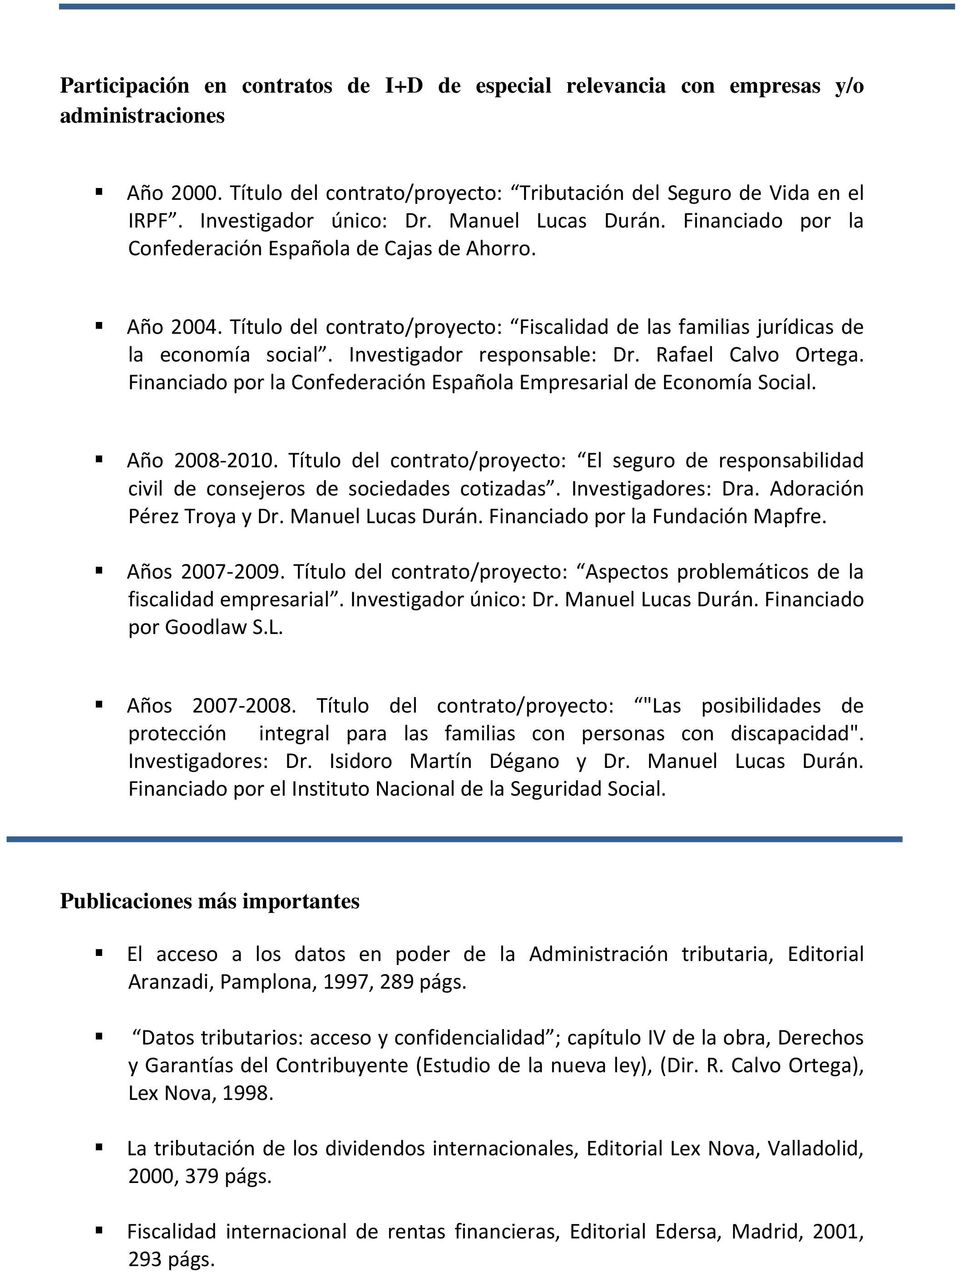 Investigador responsable: Dr. Rafael Calvo Ortega. Financiado por la Confederación Española Empresarial de Economía Social. Año 2008 2010.